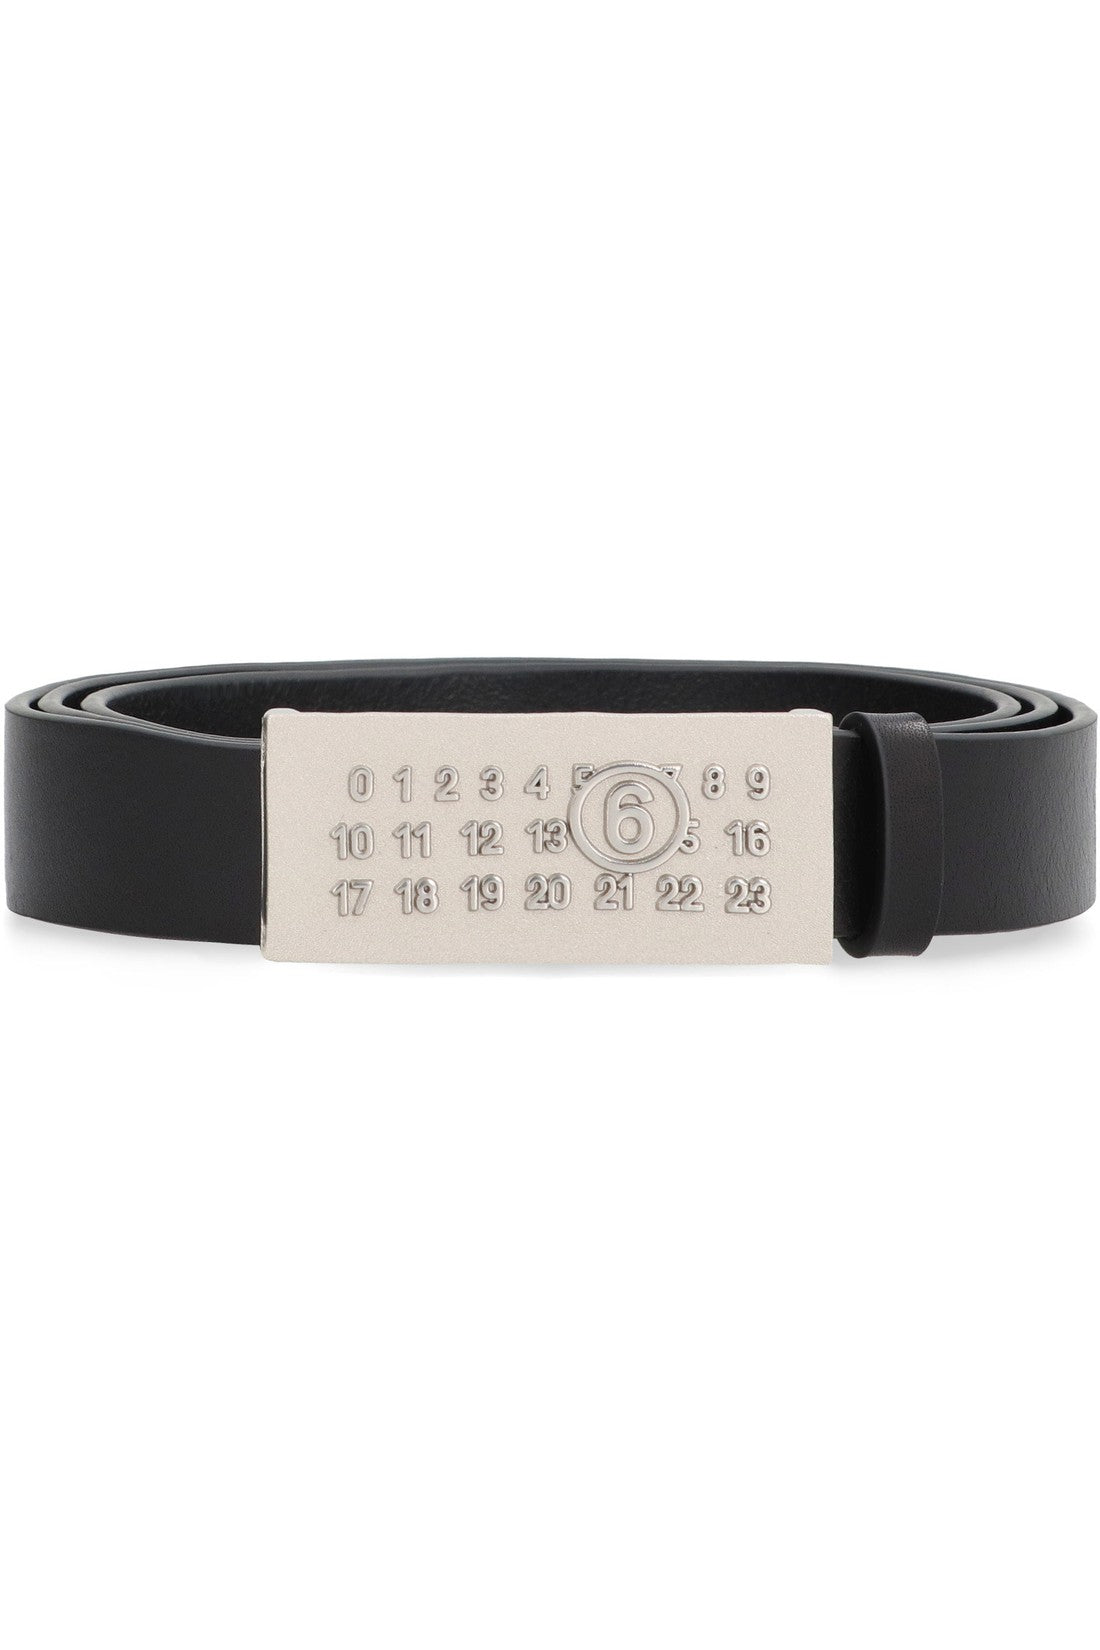 MM6 Maison Margiela-OUTLET-SALE-Logo buckle leather belt-ARCHIVIST